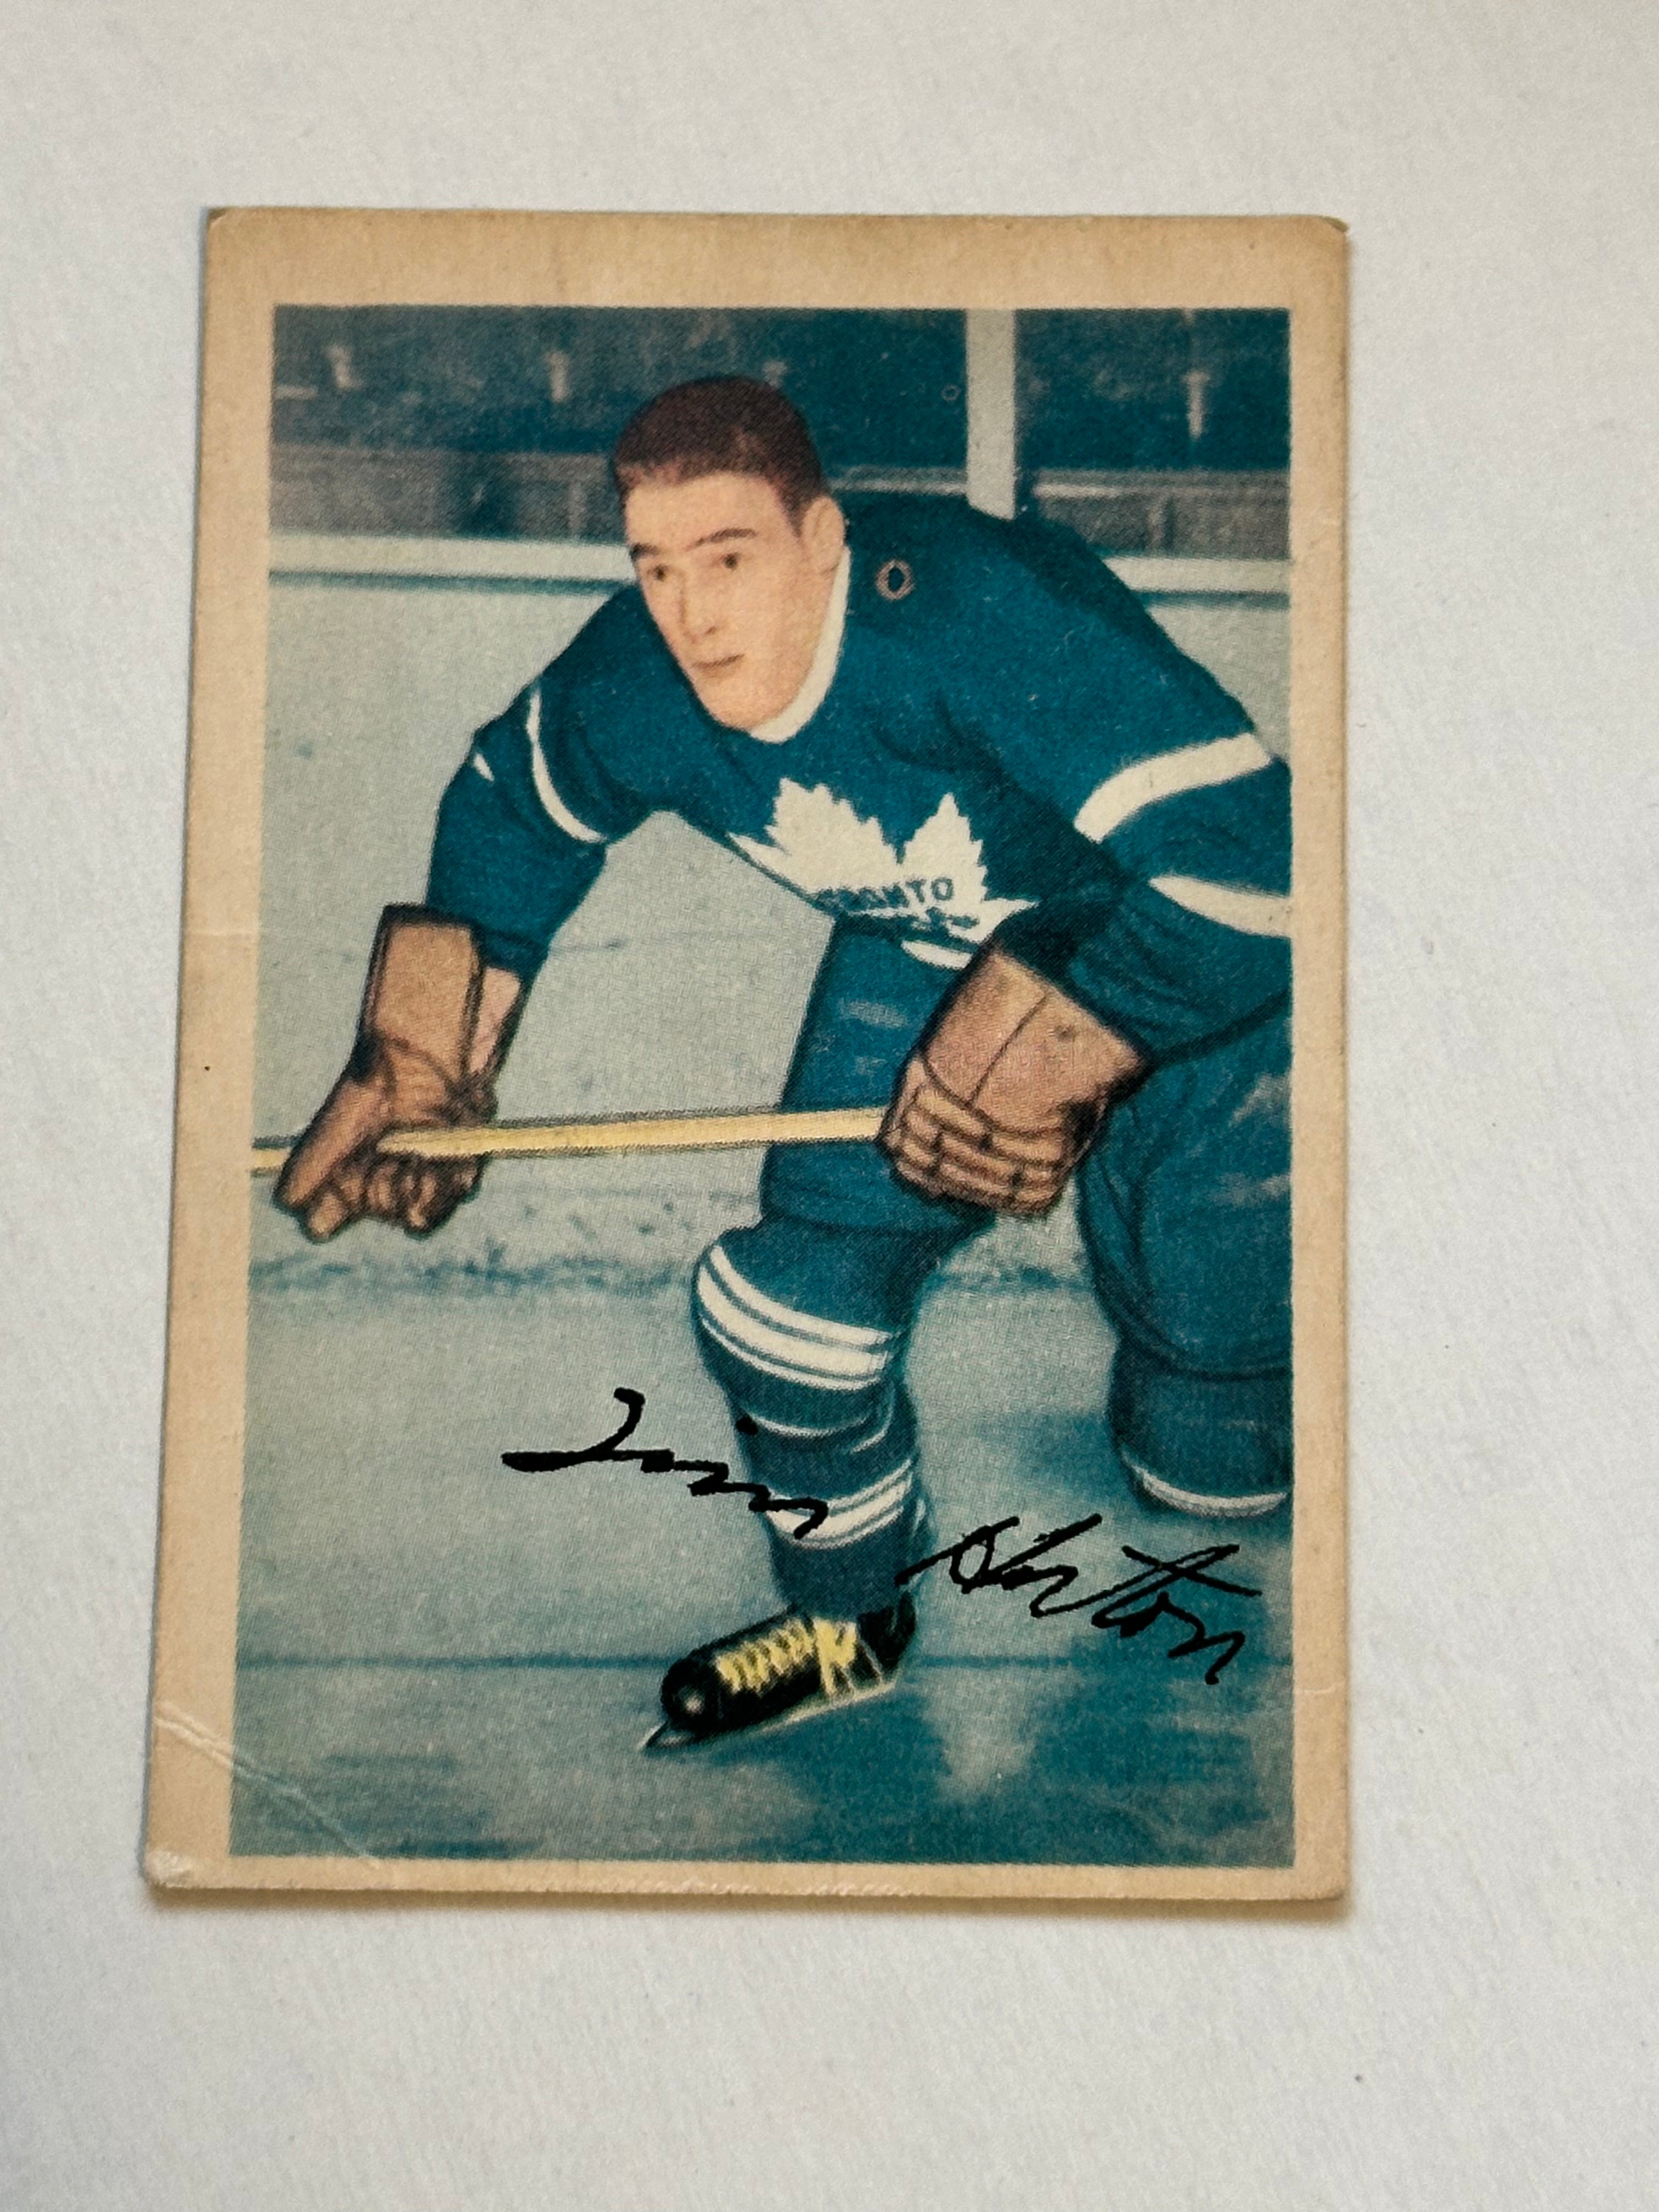 Tim Horton Leafs Legend rare original Parkhurst hockey card 1953-54